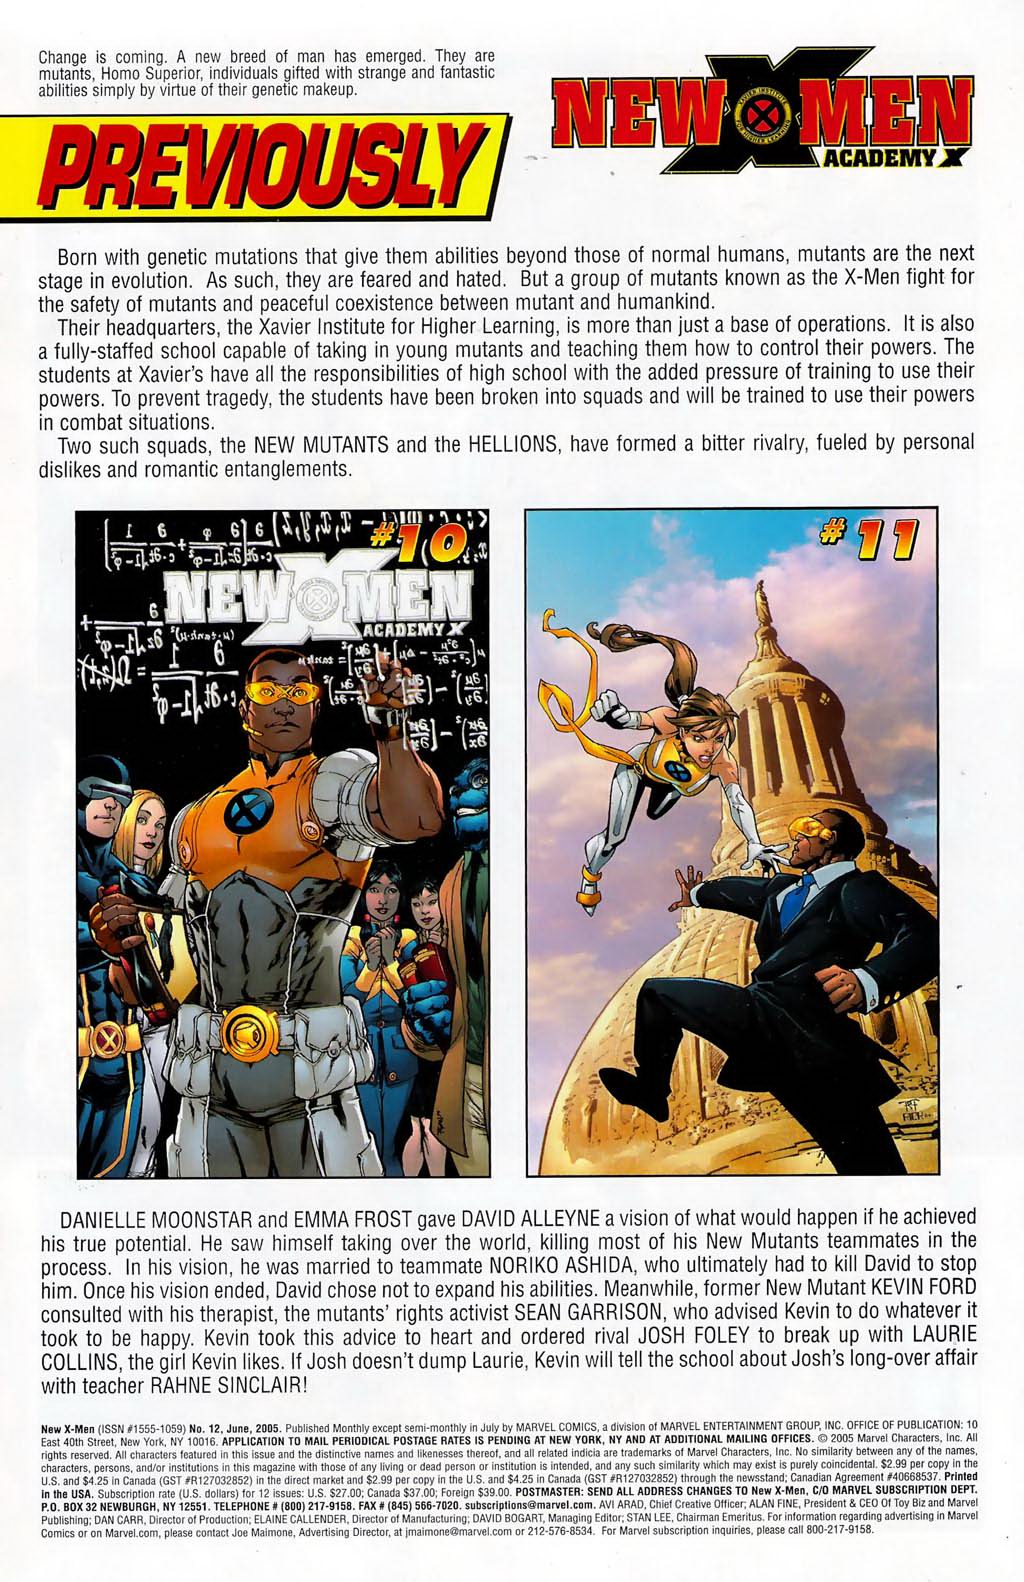 New X-Men v2 - Academy X new x-men #012 trang 2